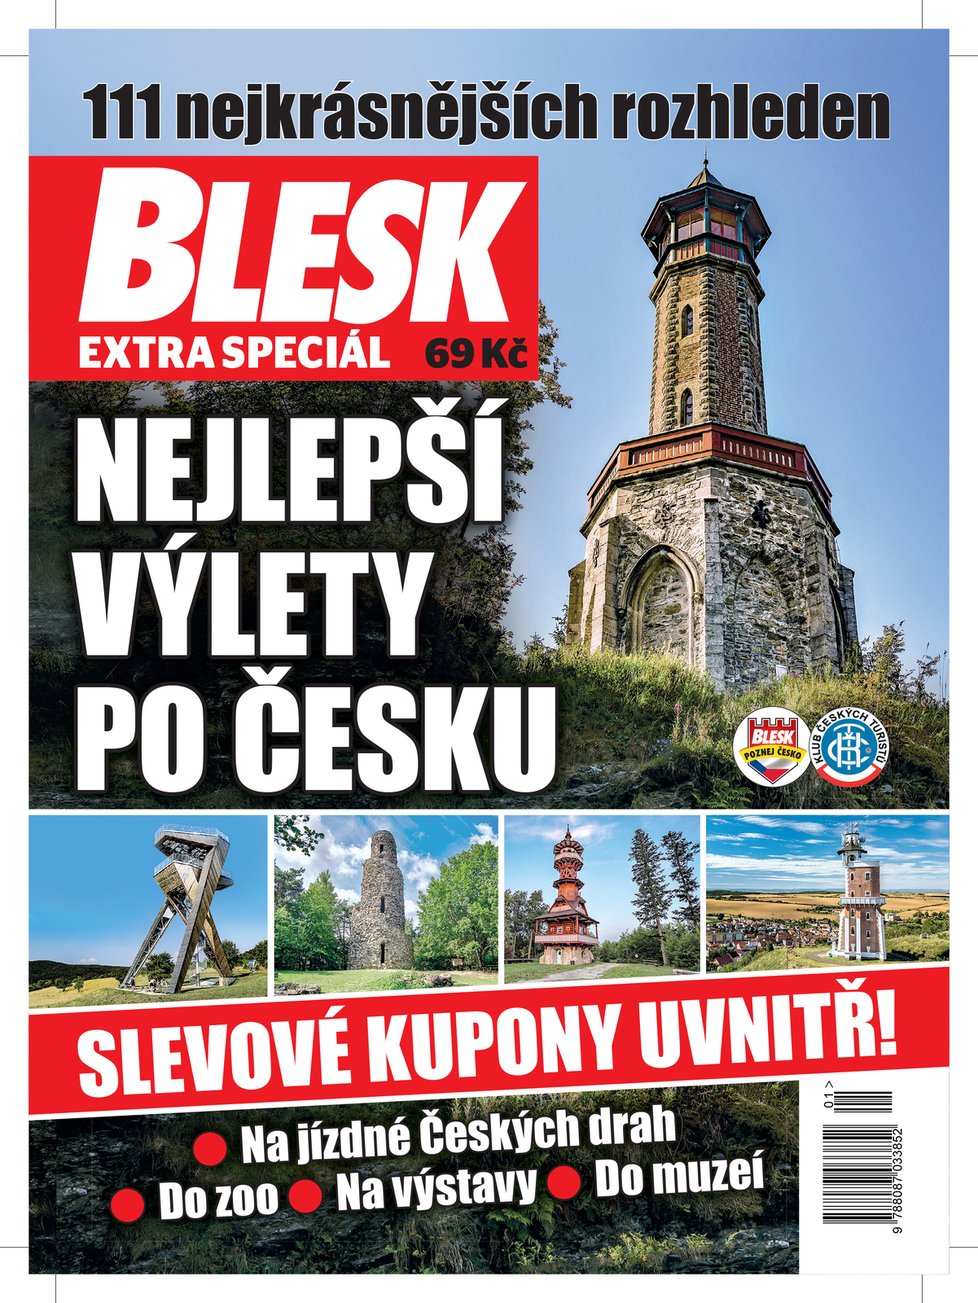 Bedekr Nejlepší výlety po Česku v prodeji od středy 3. června.